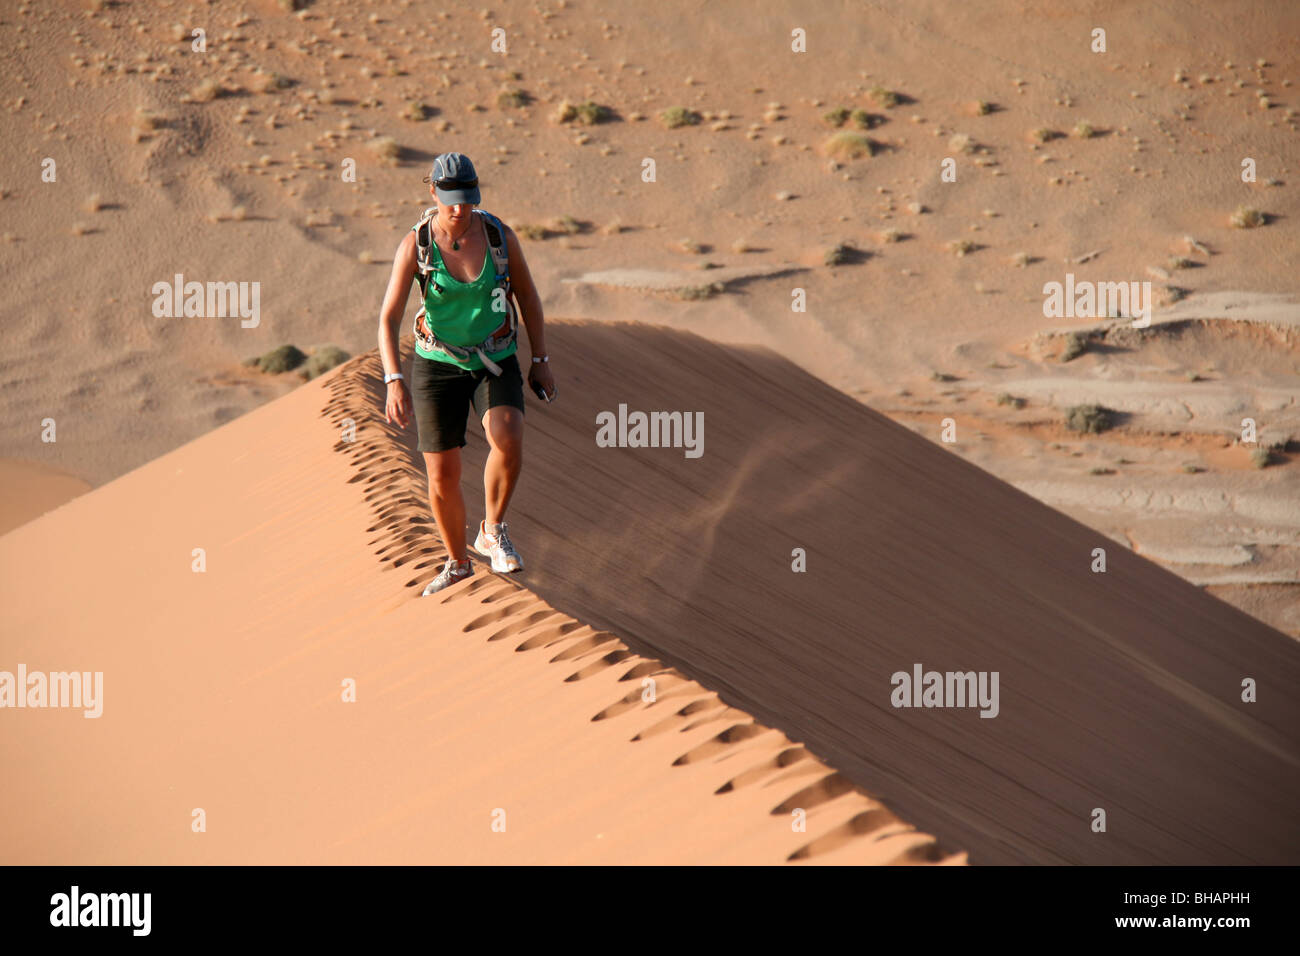 Wandern entlang der unberührten Grat einer riesigen roten Sanddüne in der Wüste von Namibia Stockfoto